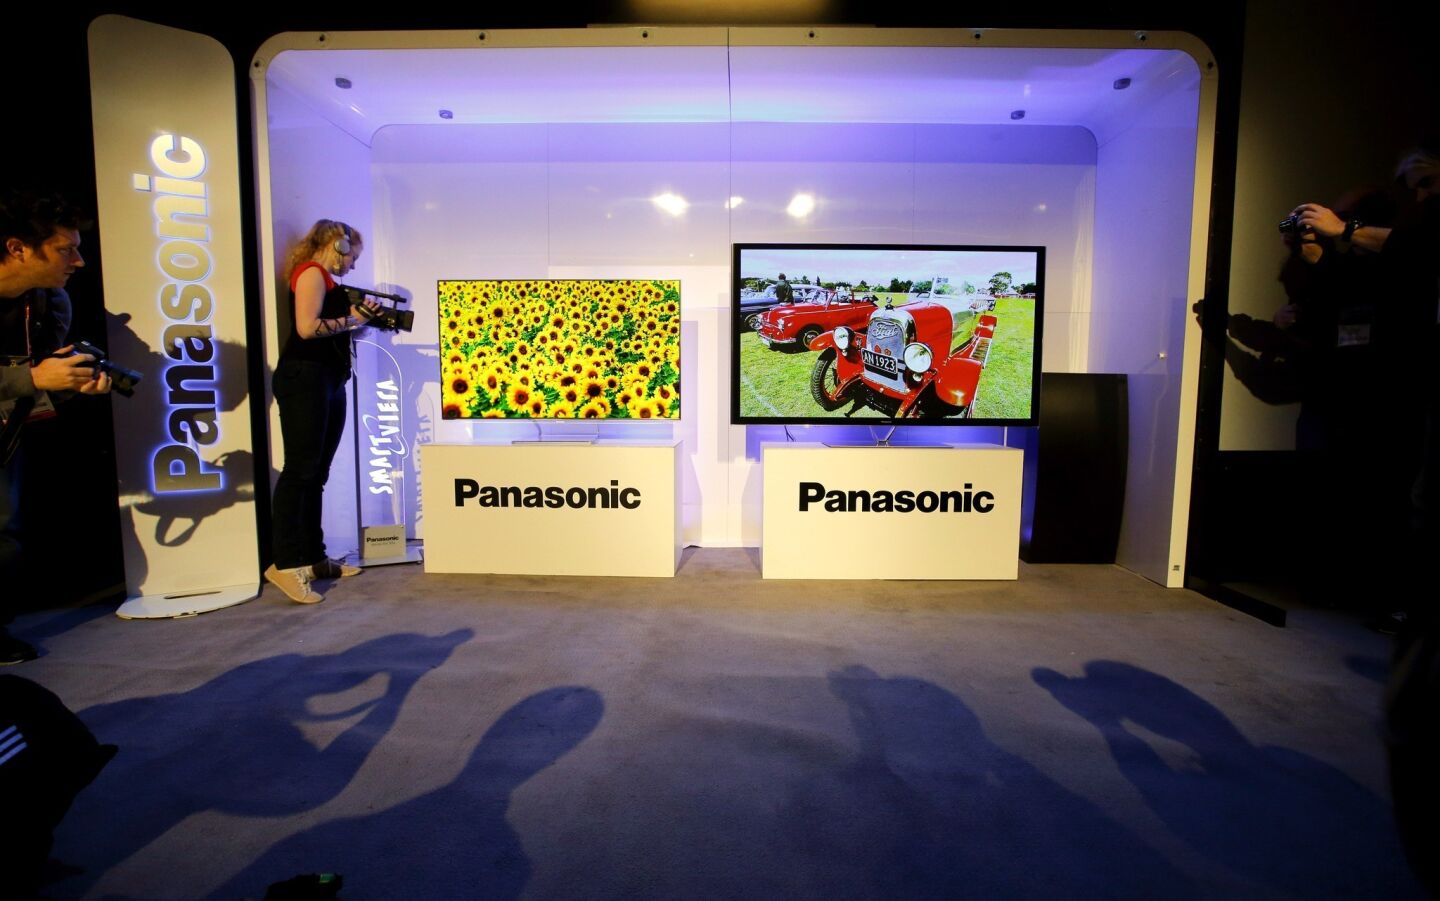 Panasonic TVs